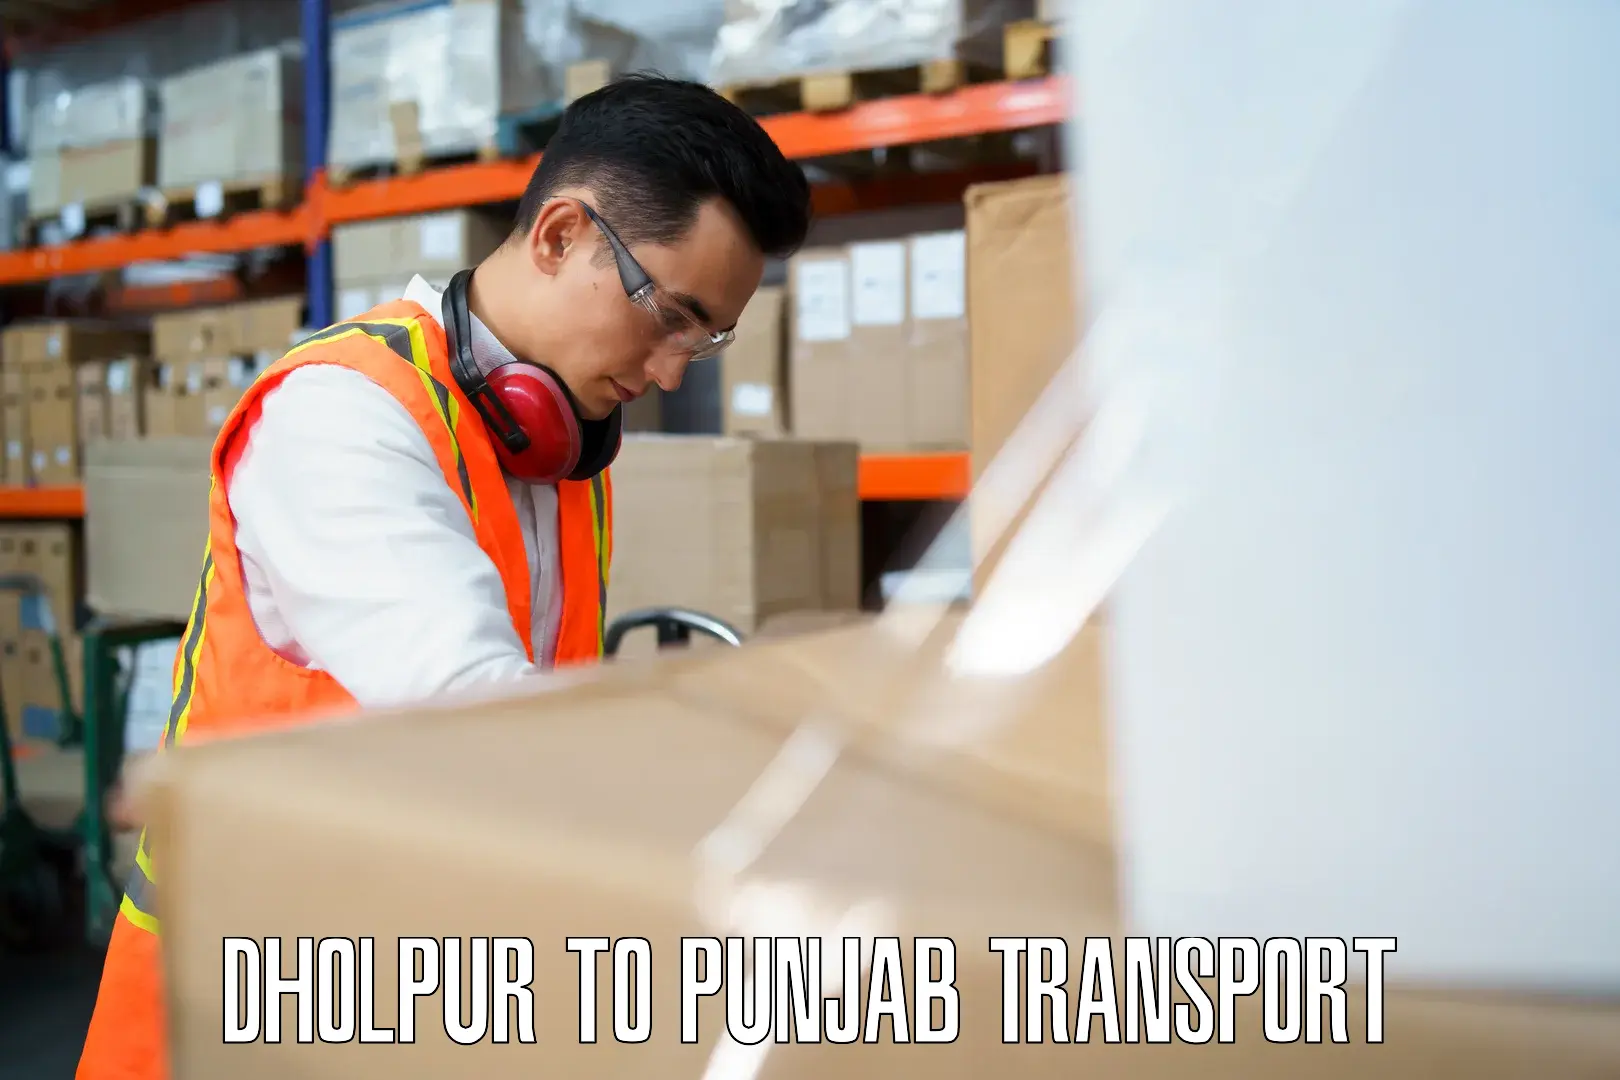 Bike shipping service Dholpur to Punjab